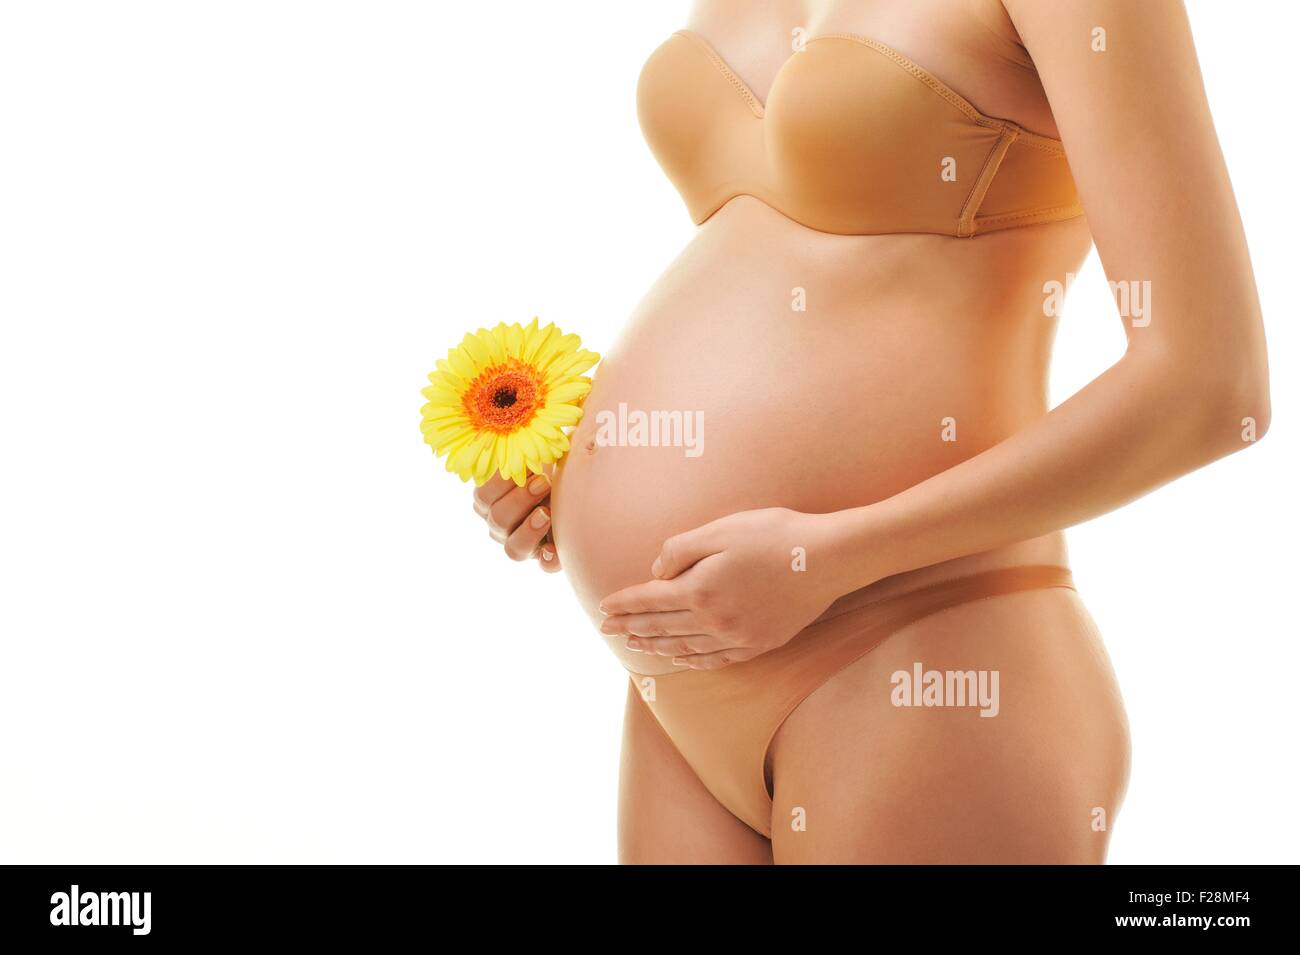 у кого чесалась грудь во время беременности фото 112